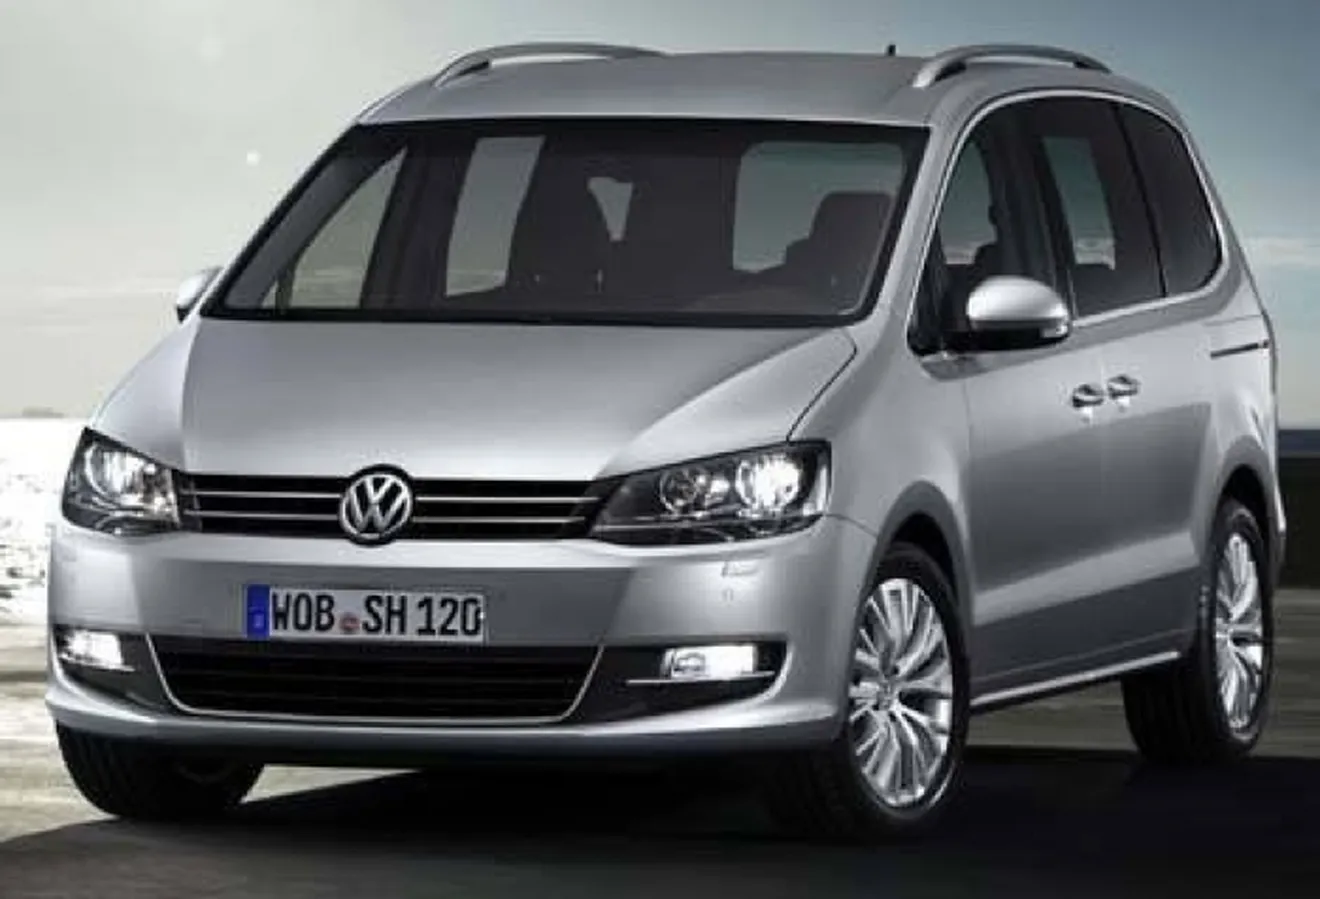 Volkswagen modifica la gama de sus modelos